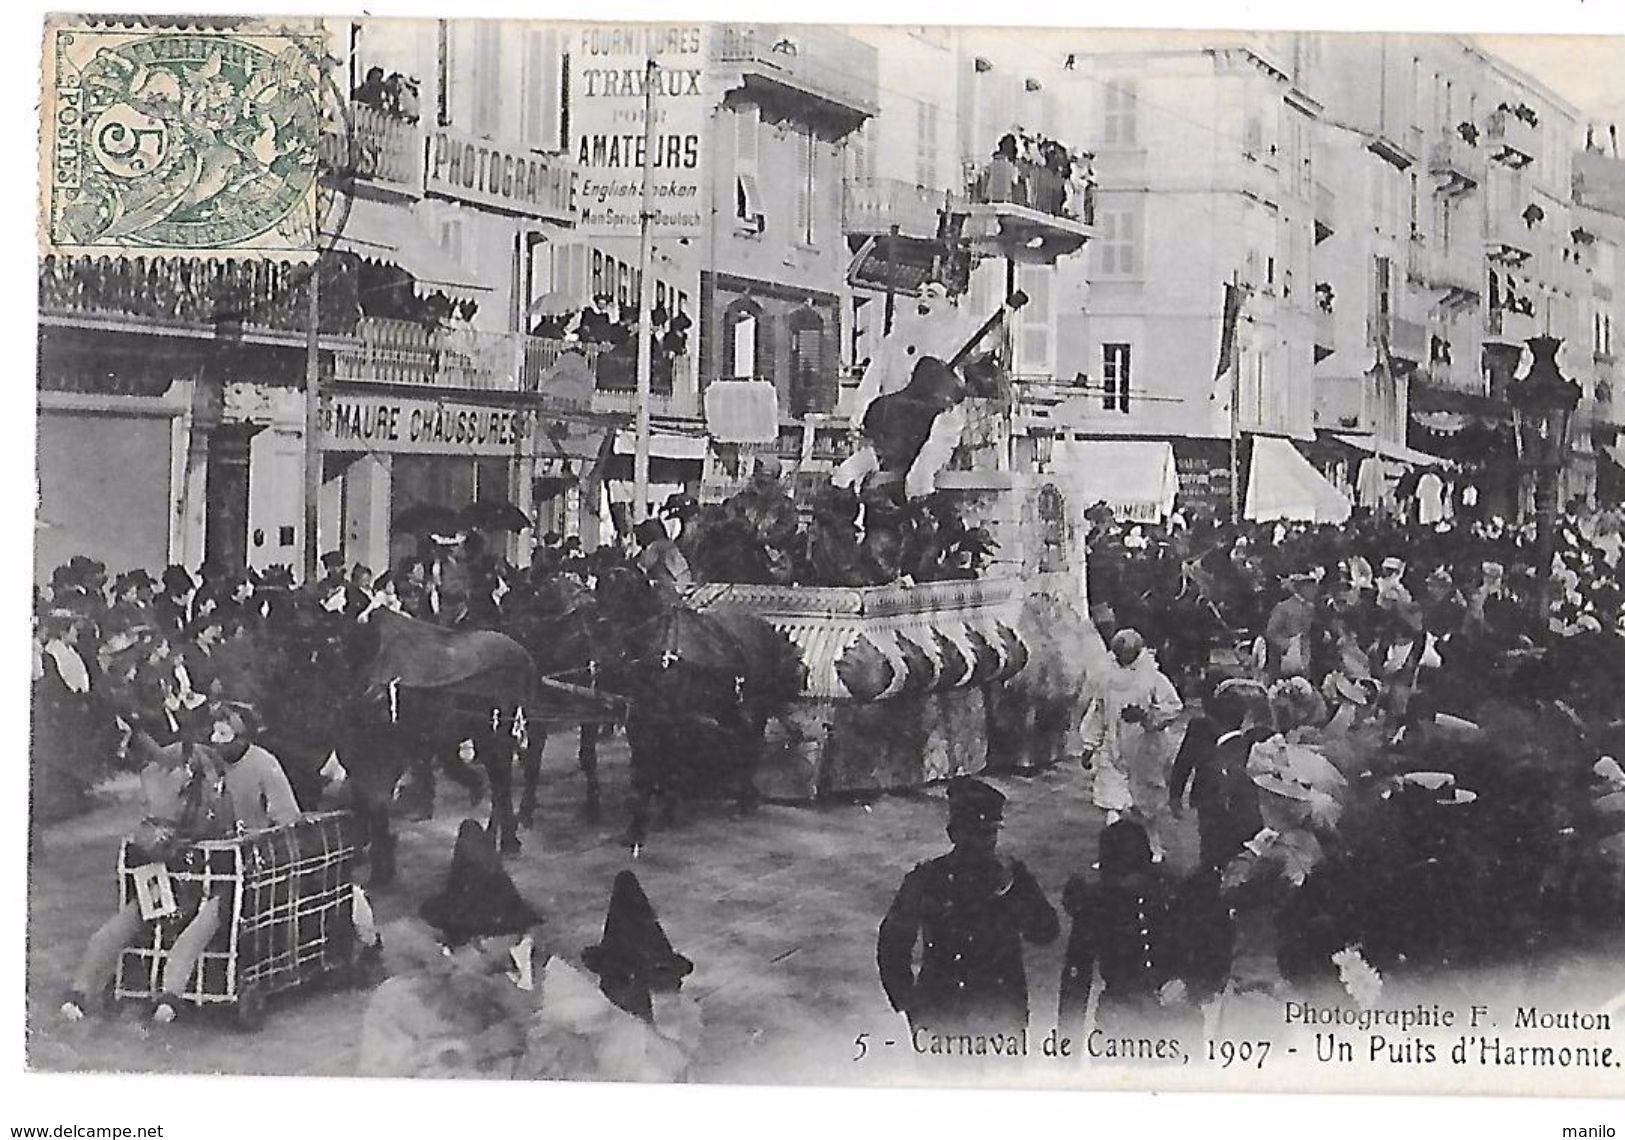 CARNAVAL De CANNES 1907 - UN PUITS D'HARMONIE - Char Tracté Par 4 Chevaux - Magasins MAURE CHAUSSURES -photo F.MOUTON - Carnaval